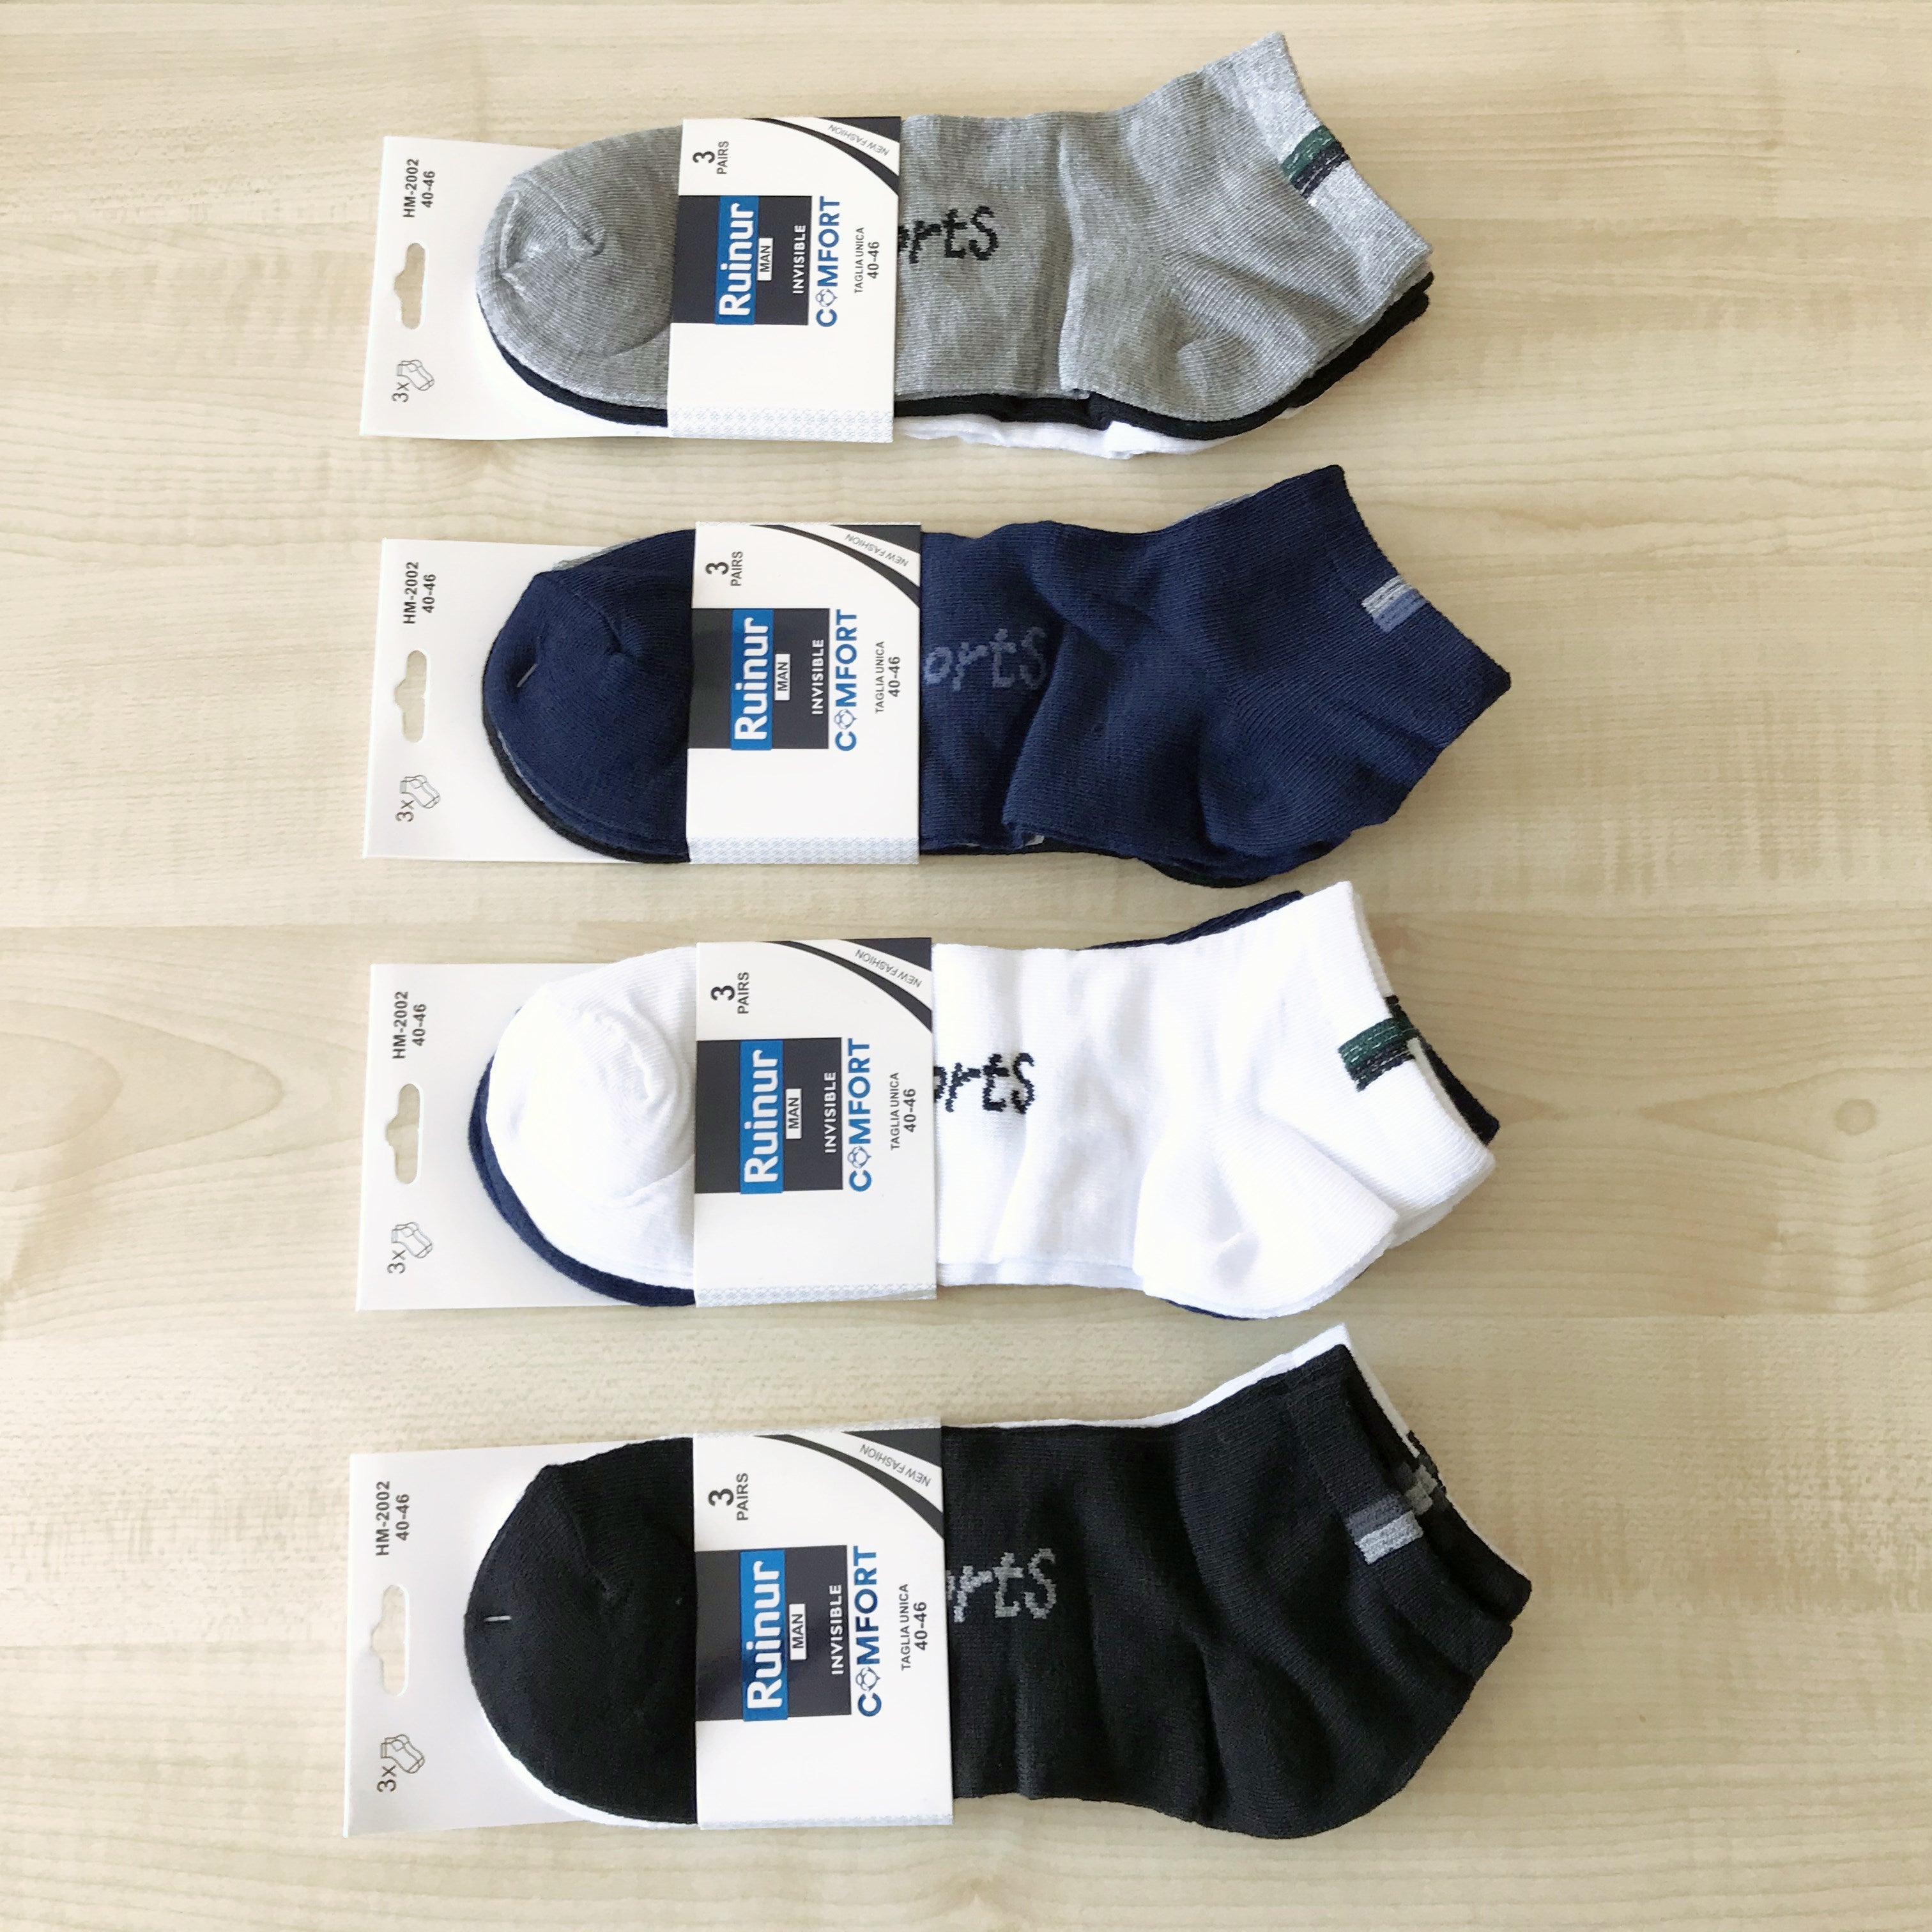 Ruinur Herren-Socken 12 Paare Vertikales Muster